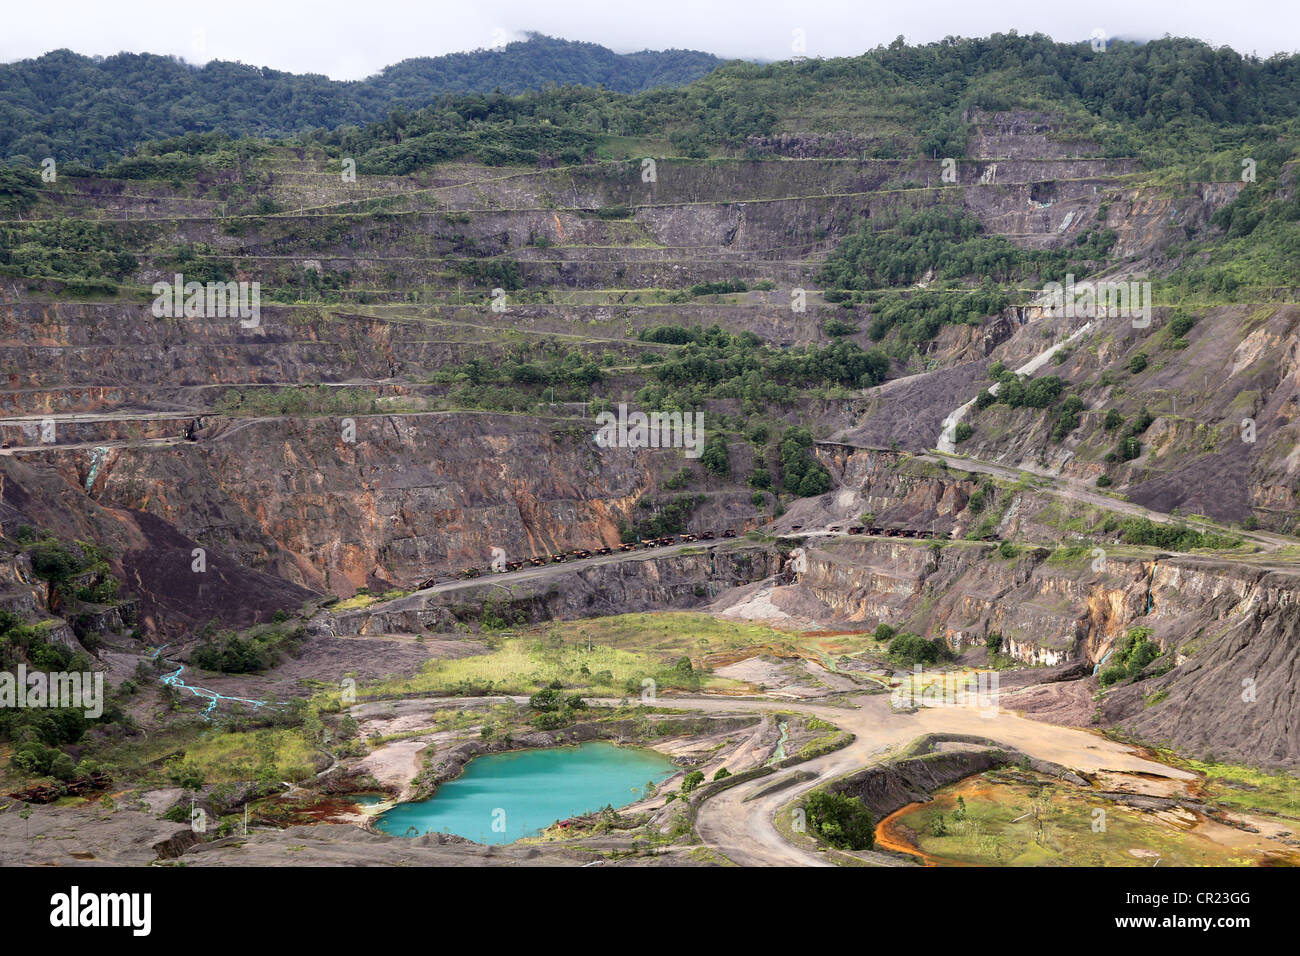 La mine de cuivre de Panguna, fermé en 1989 en raison d'un sabotage par l'Armée révolutionnaire de Bougainville. La Papouasie-Nouvelle-Guinée Banque D'Images